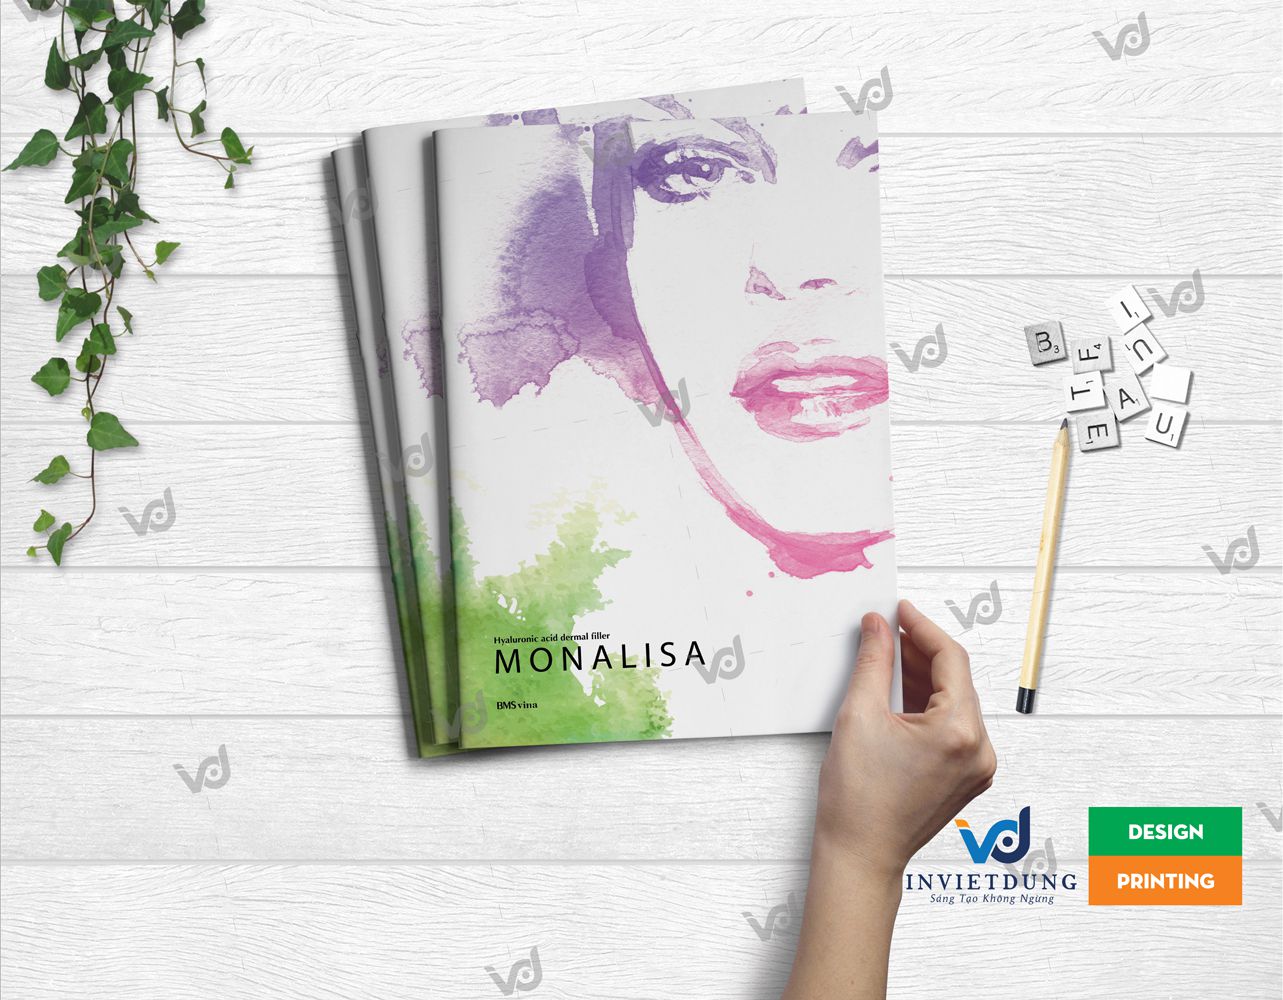 Mẫu brochure MONALISA đẹp do In Việt Dũng thiết kế và in ấn